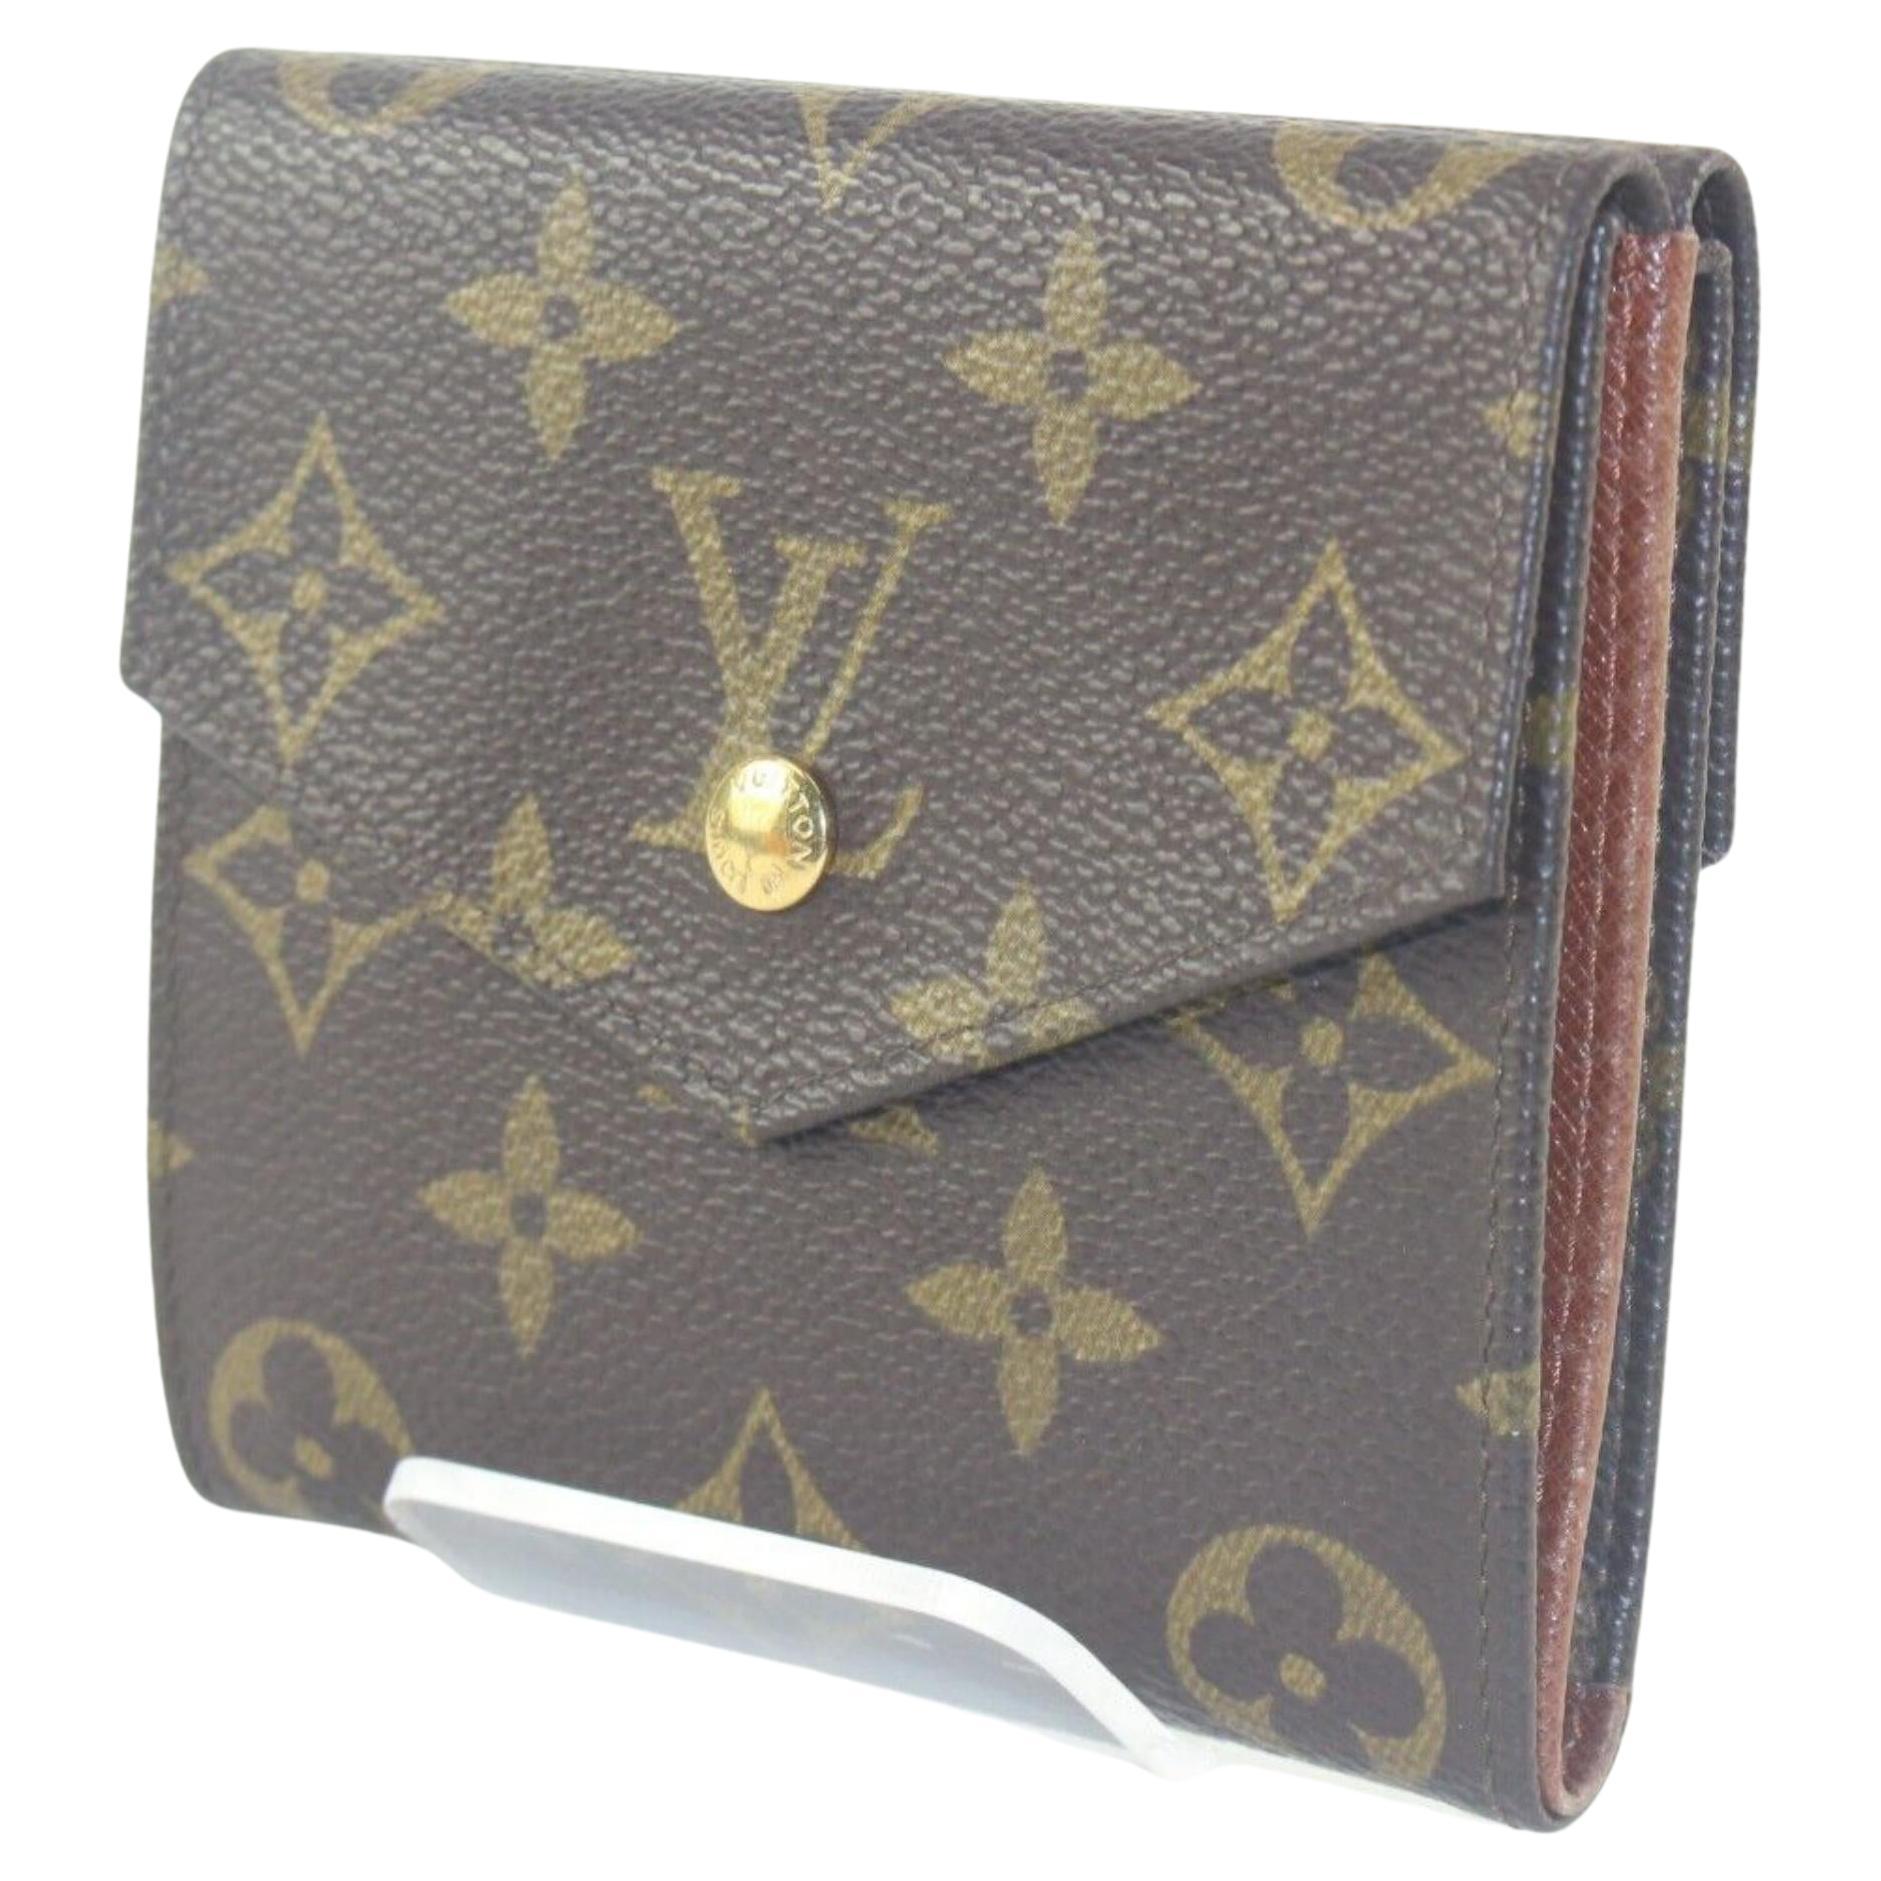 Authentic Louis Vuitton Victorine Monogram Compact Wallet 3LV1130K